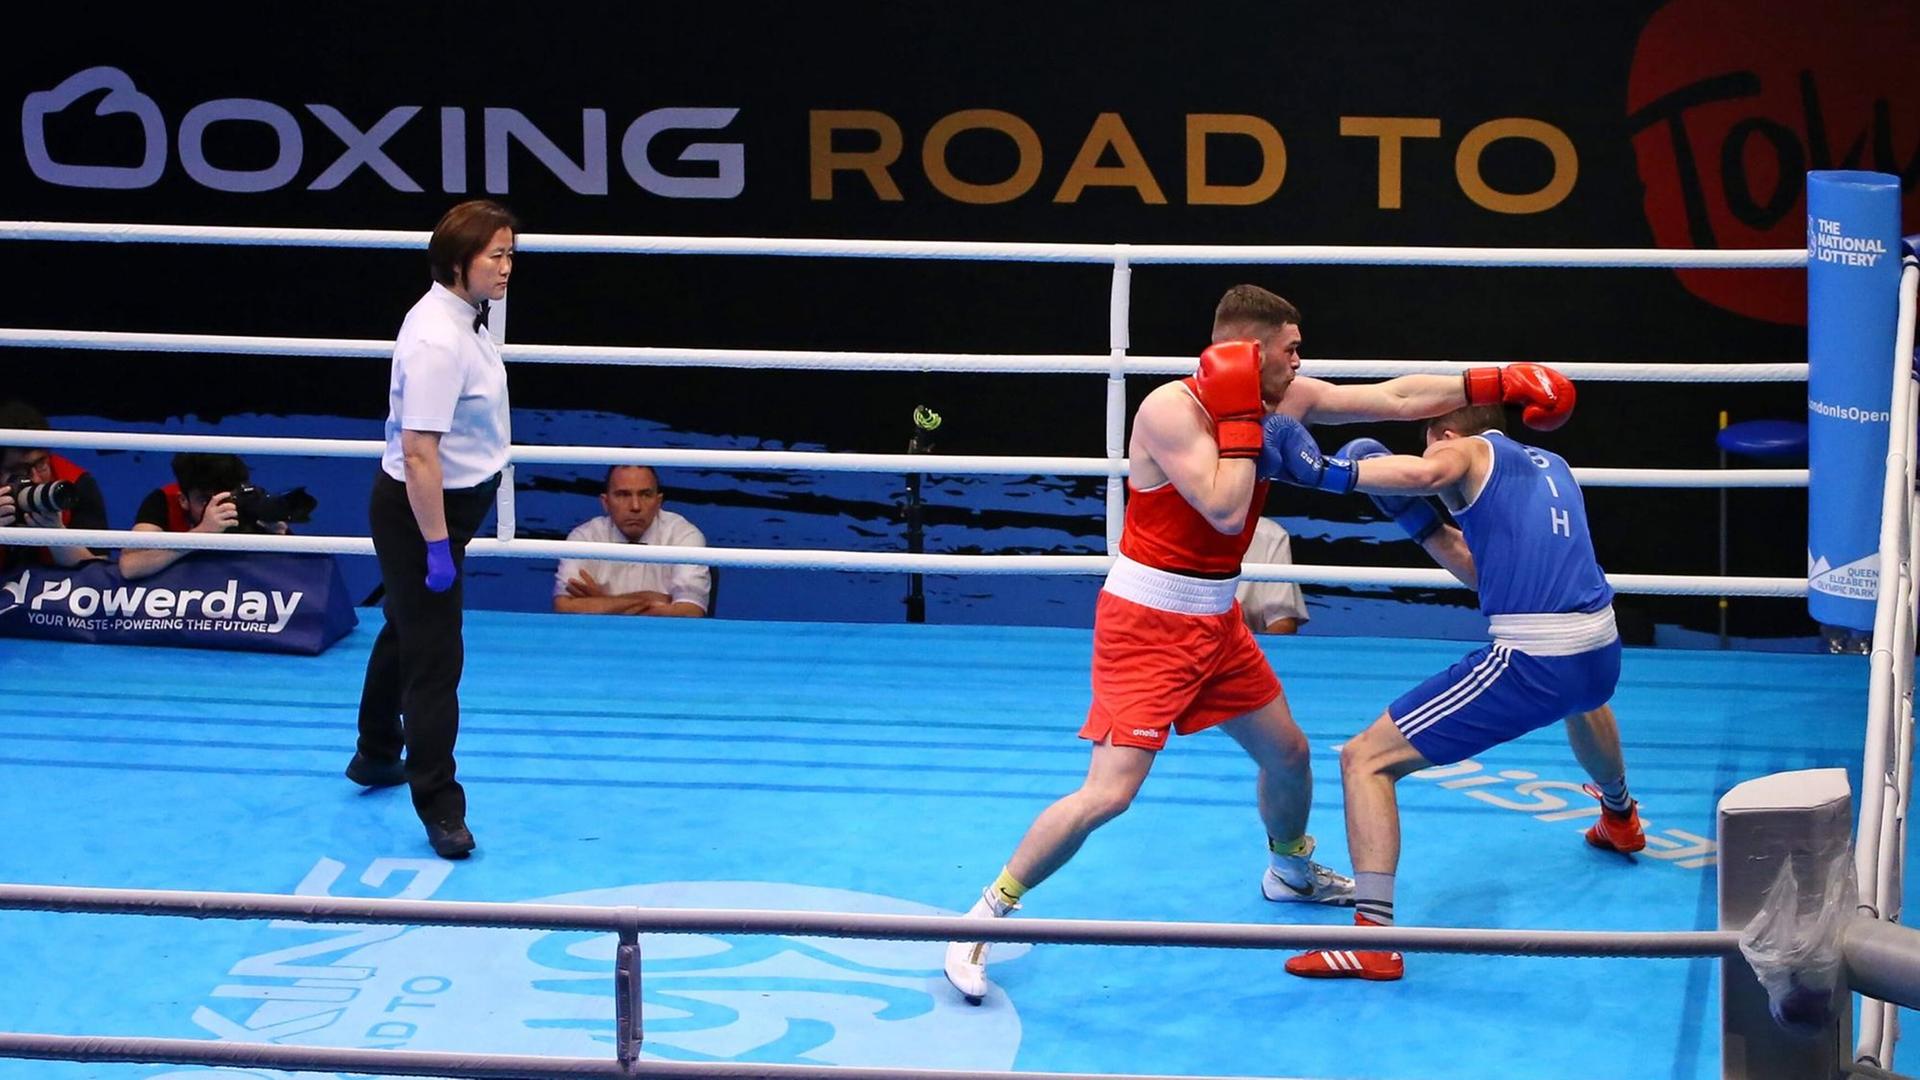 Kampf im Rahmen des Olympia-Qualifikationsturniers der europäischen Boxer in London (Großbritannien) für die Olympischen Spiele 2020 in Tokio